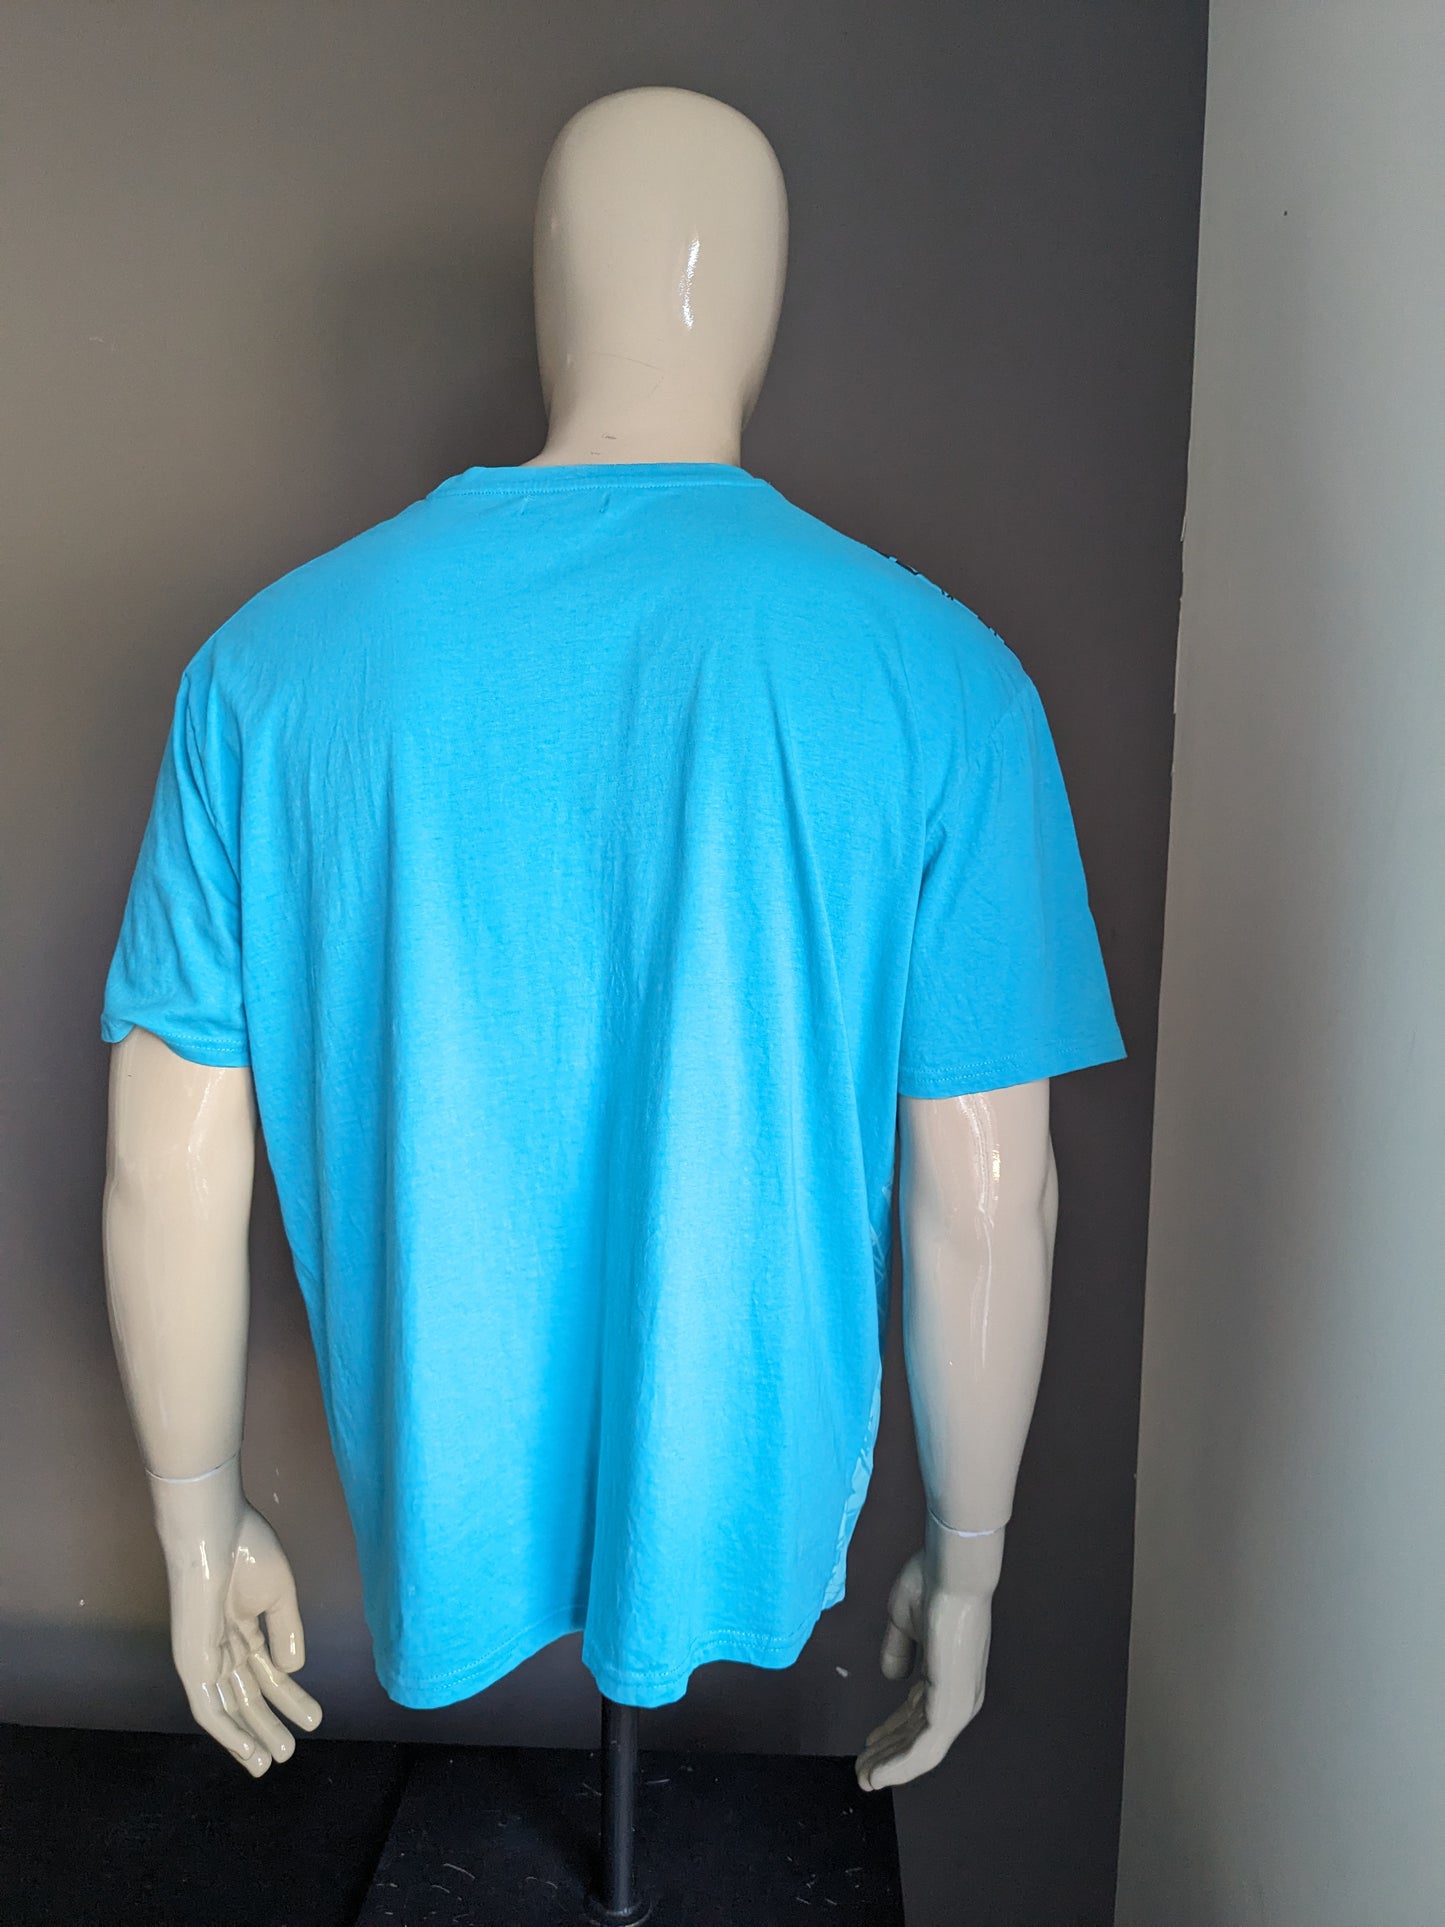 Atlas pour hommes chemise. Bleu avec imprimé. Taille 3xl / xxxl.